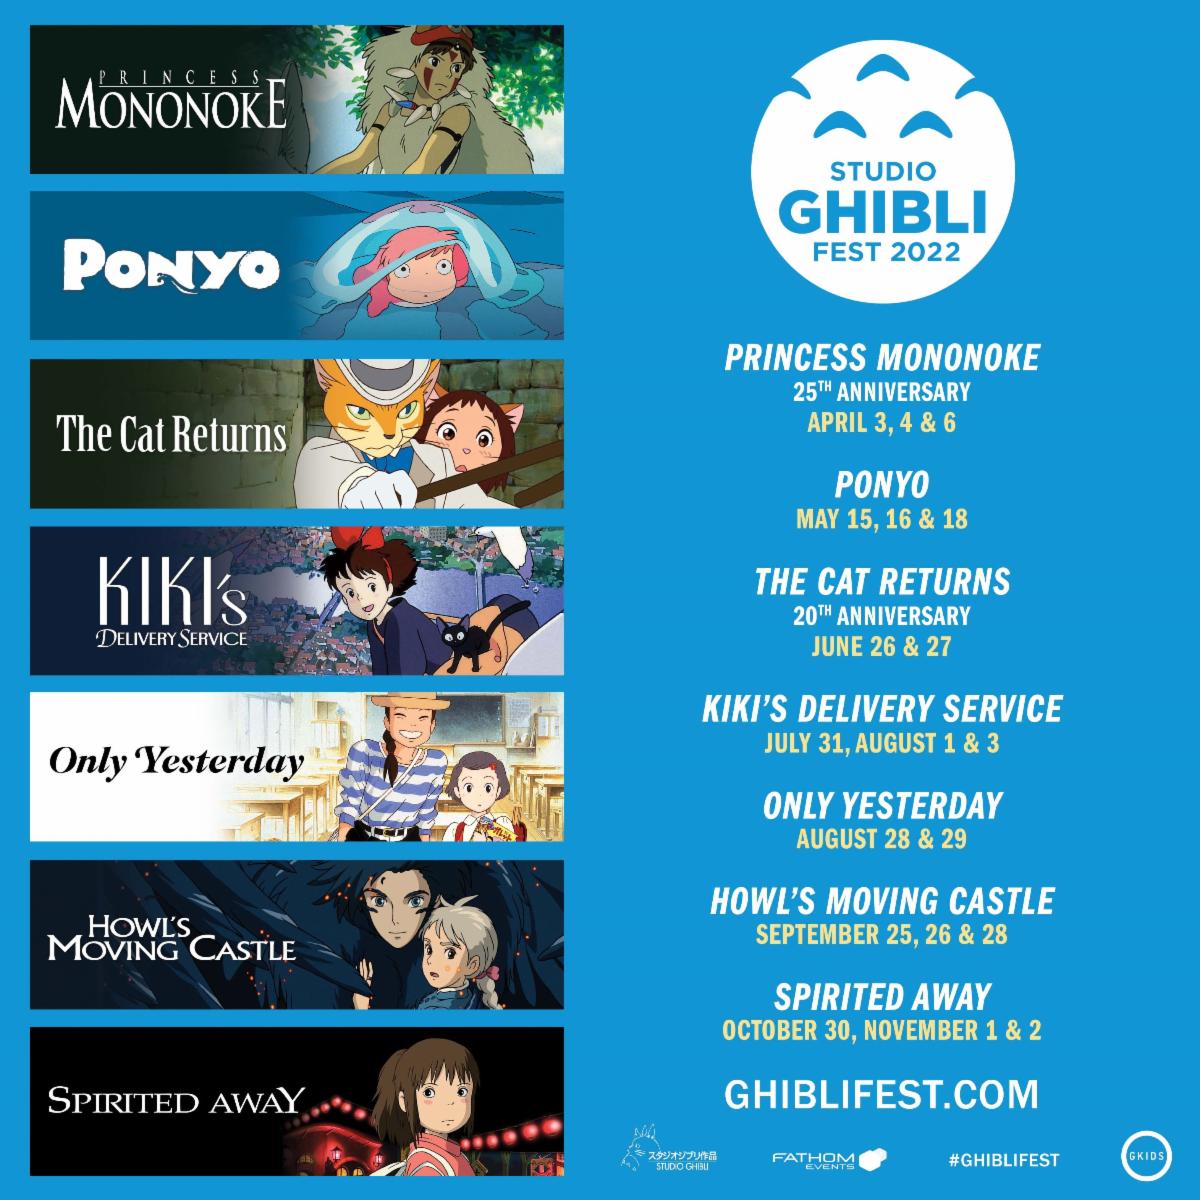 Studio Ghibli Fest 2022 (Ponyo, Cat Returns, Only Yesterday, Howl's